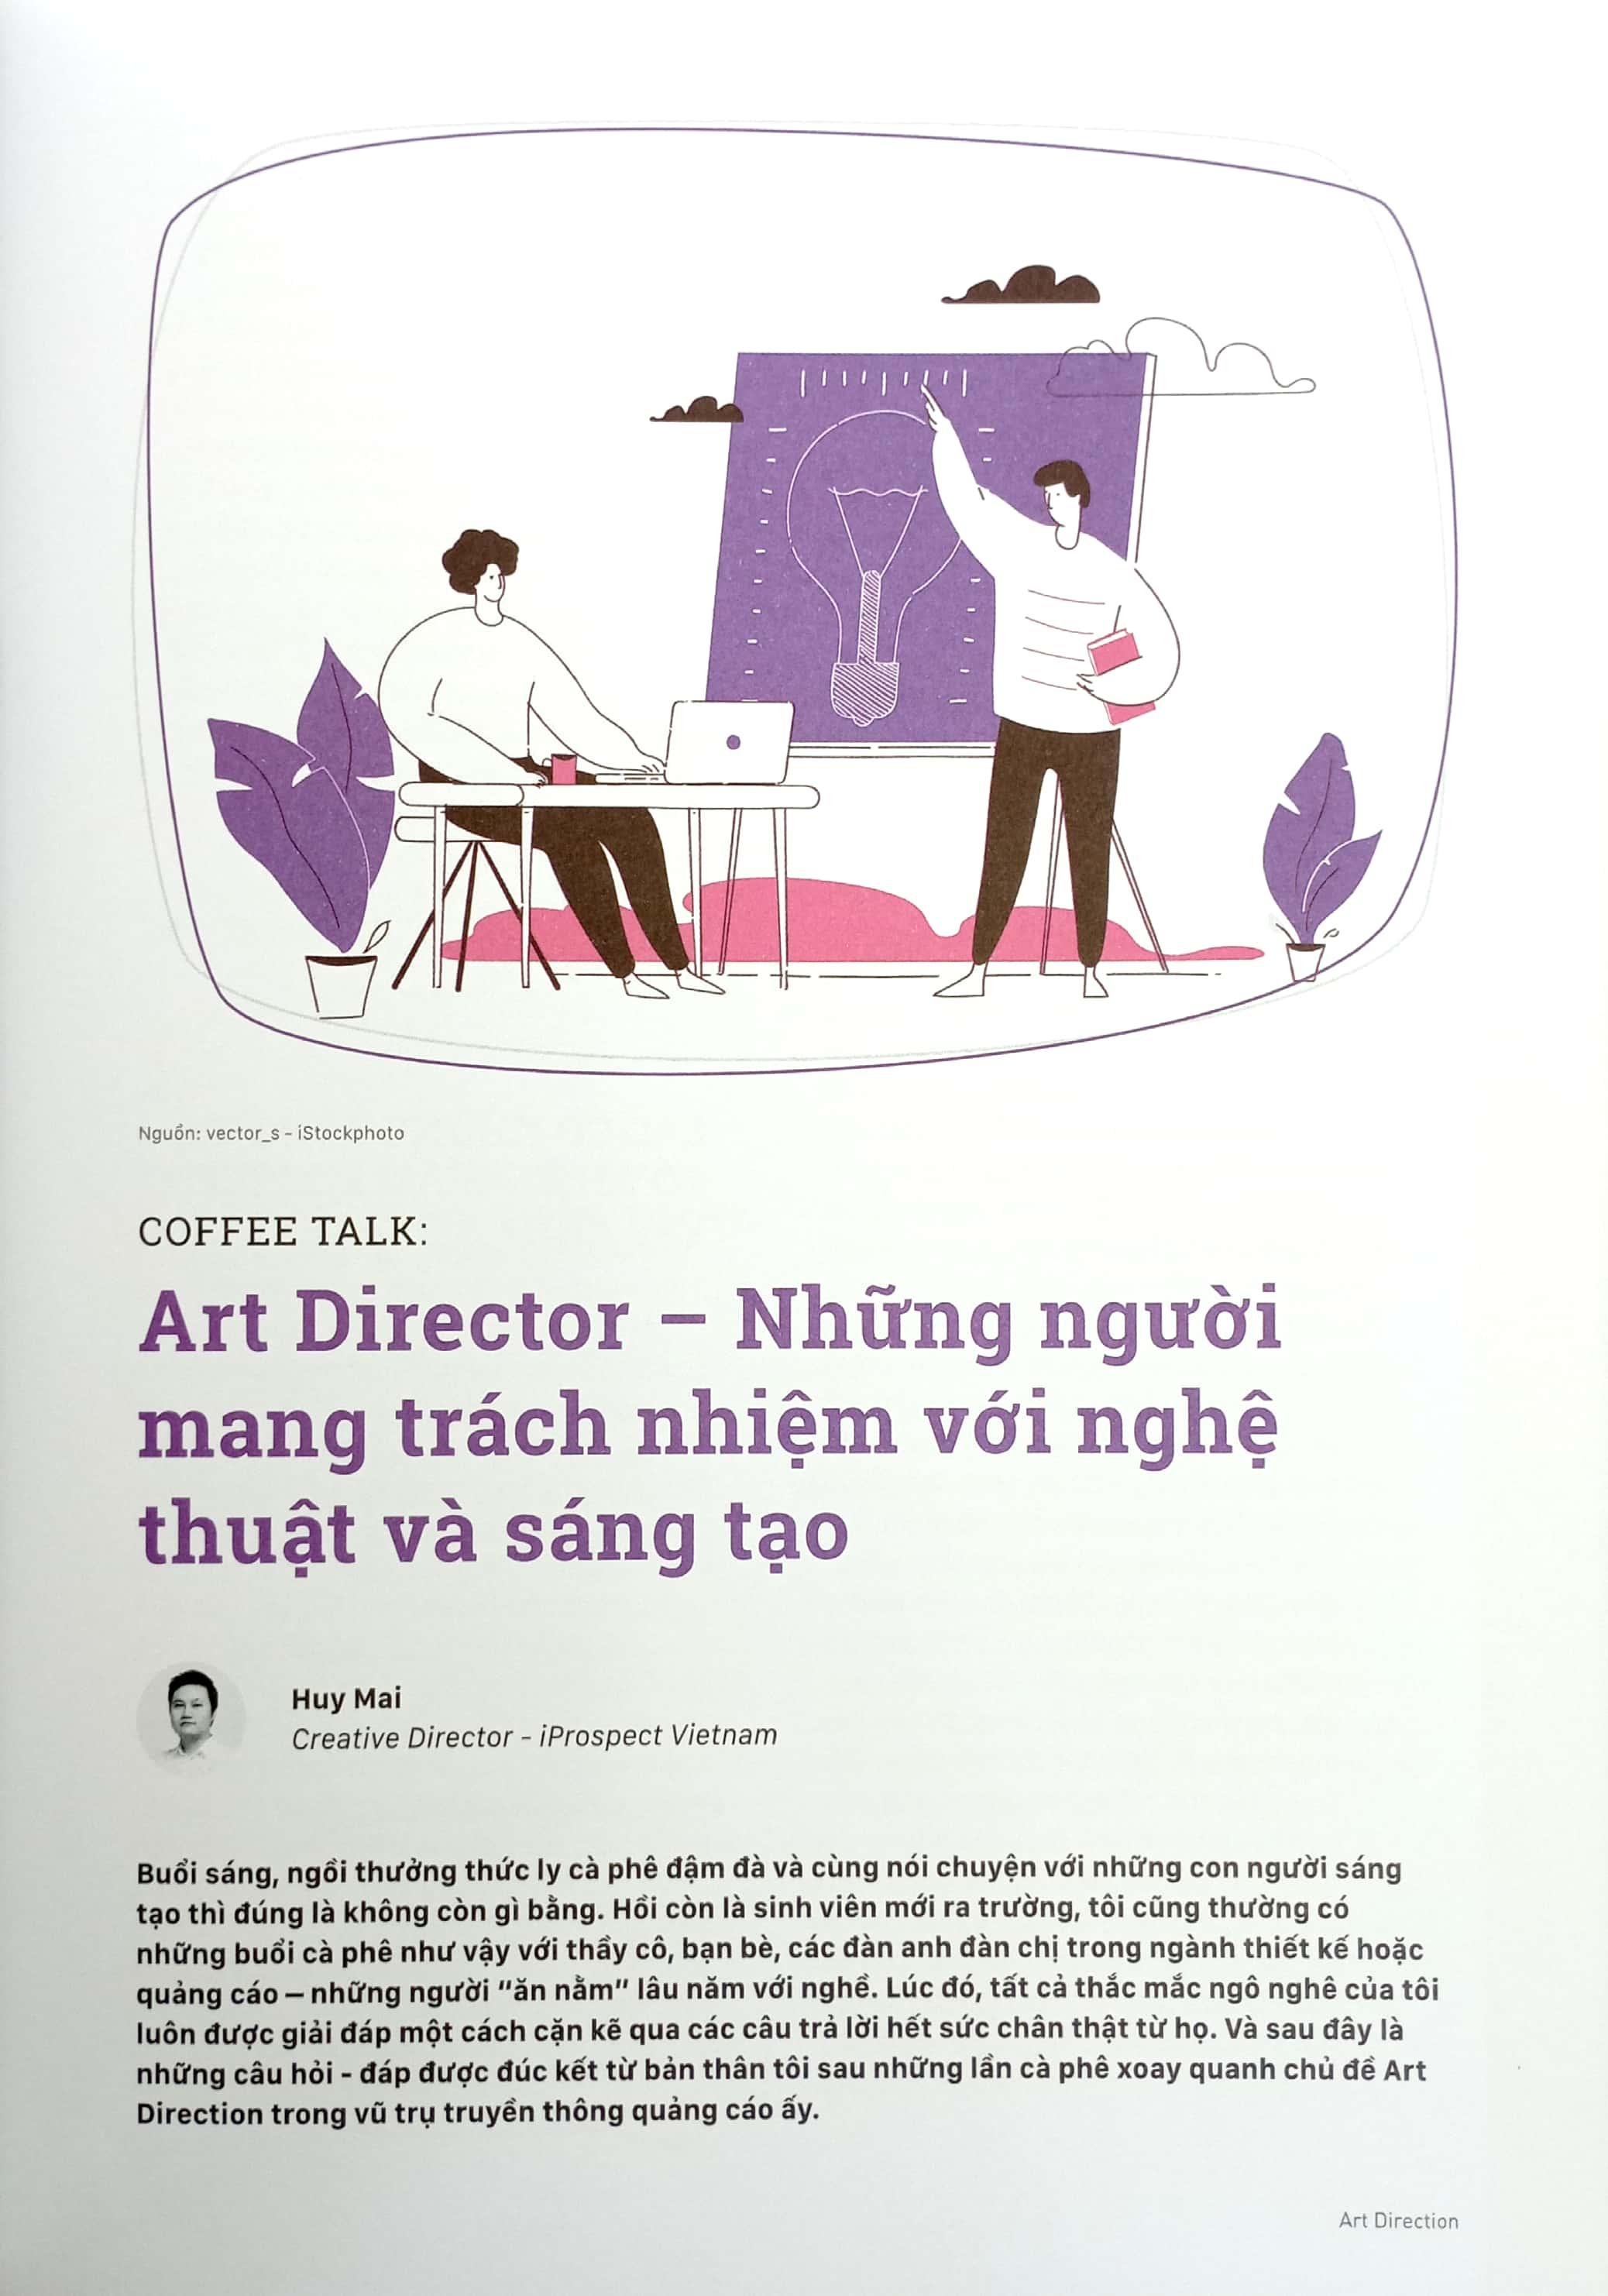 Art Direction - Art Director Và Hành Trình Định Hướng Hình Ảnh Trong Chiến Dịch Quảng Cáo